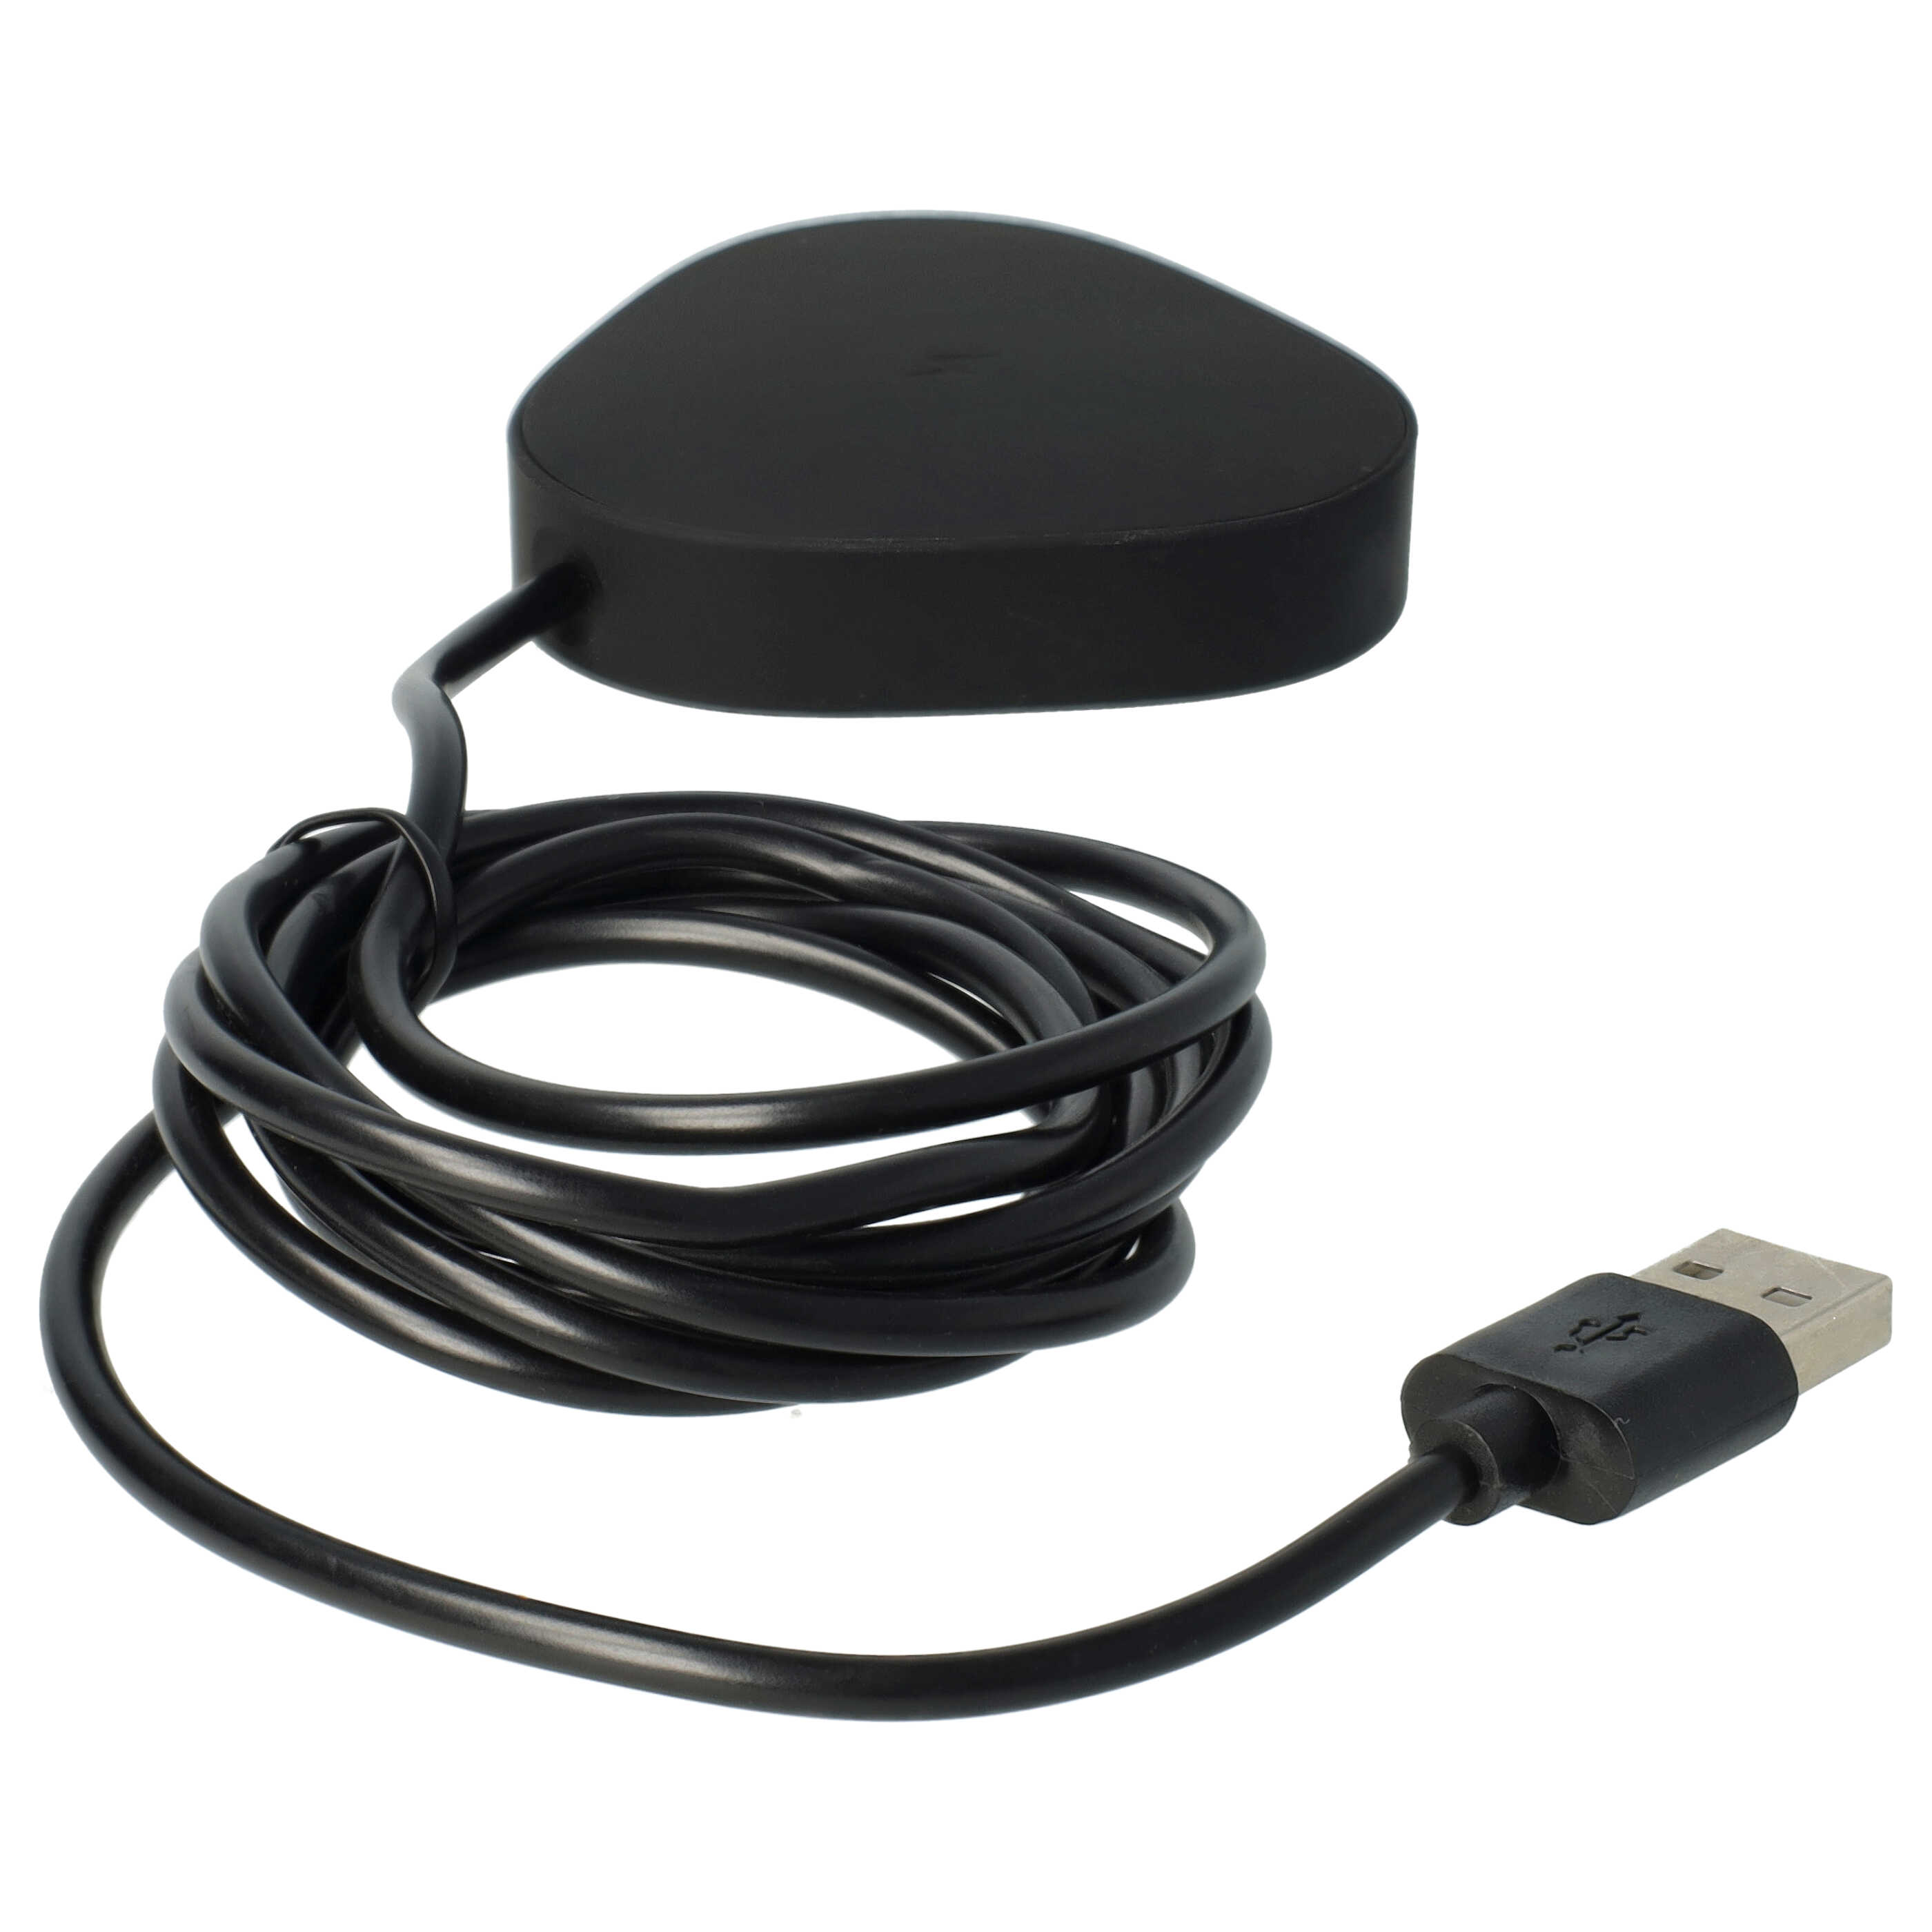 Ładowarka do głośnika Sonos zamiennik Sonos Wireless Charger LPS-05WB-I - podstawka + kabel, 145 cm, czarny